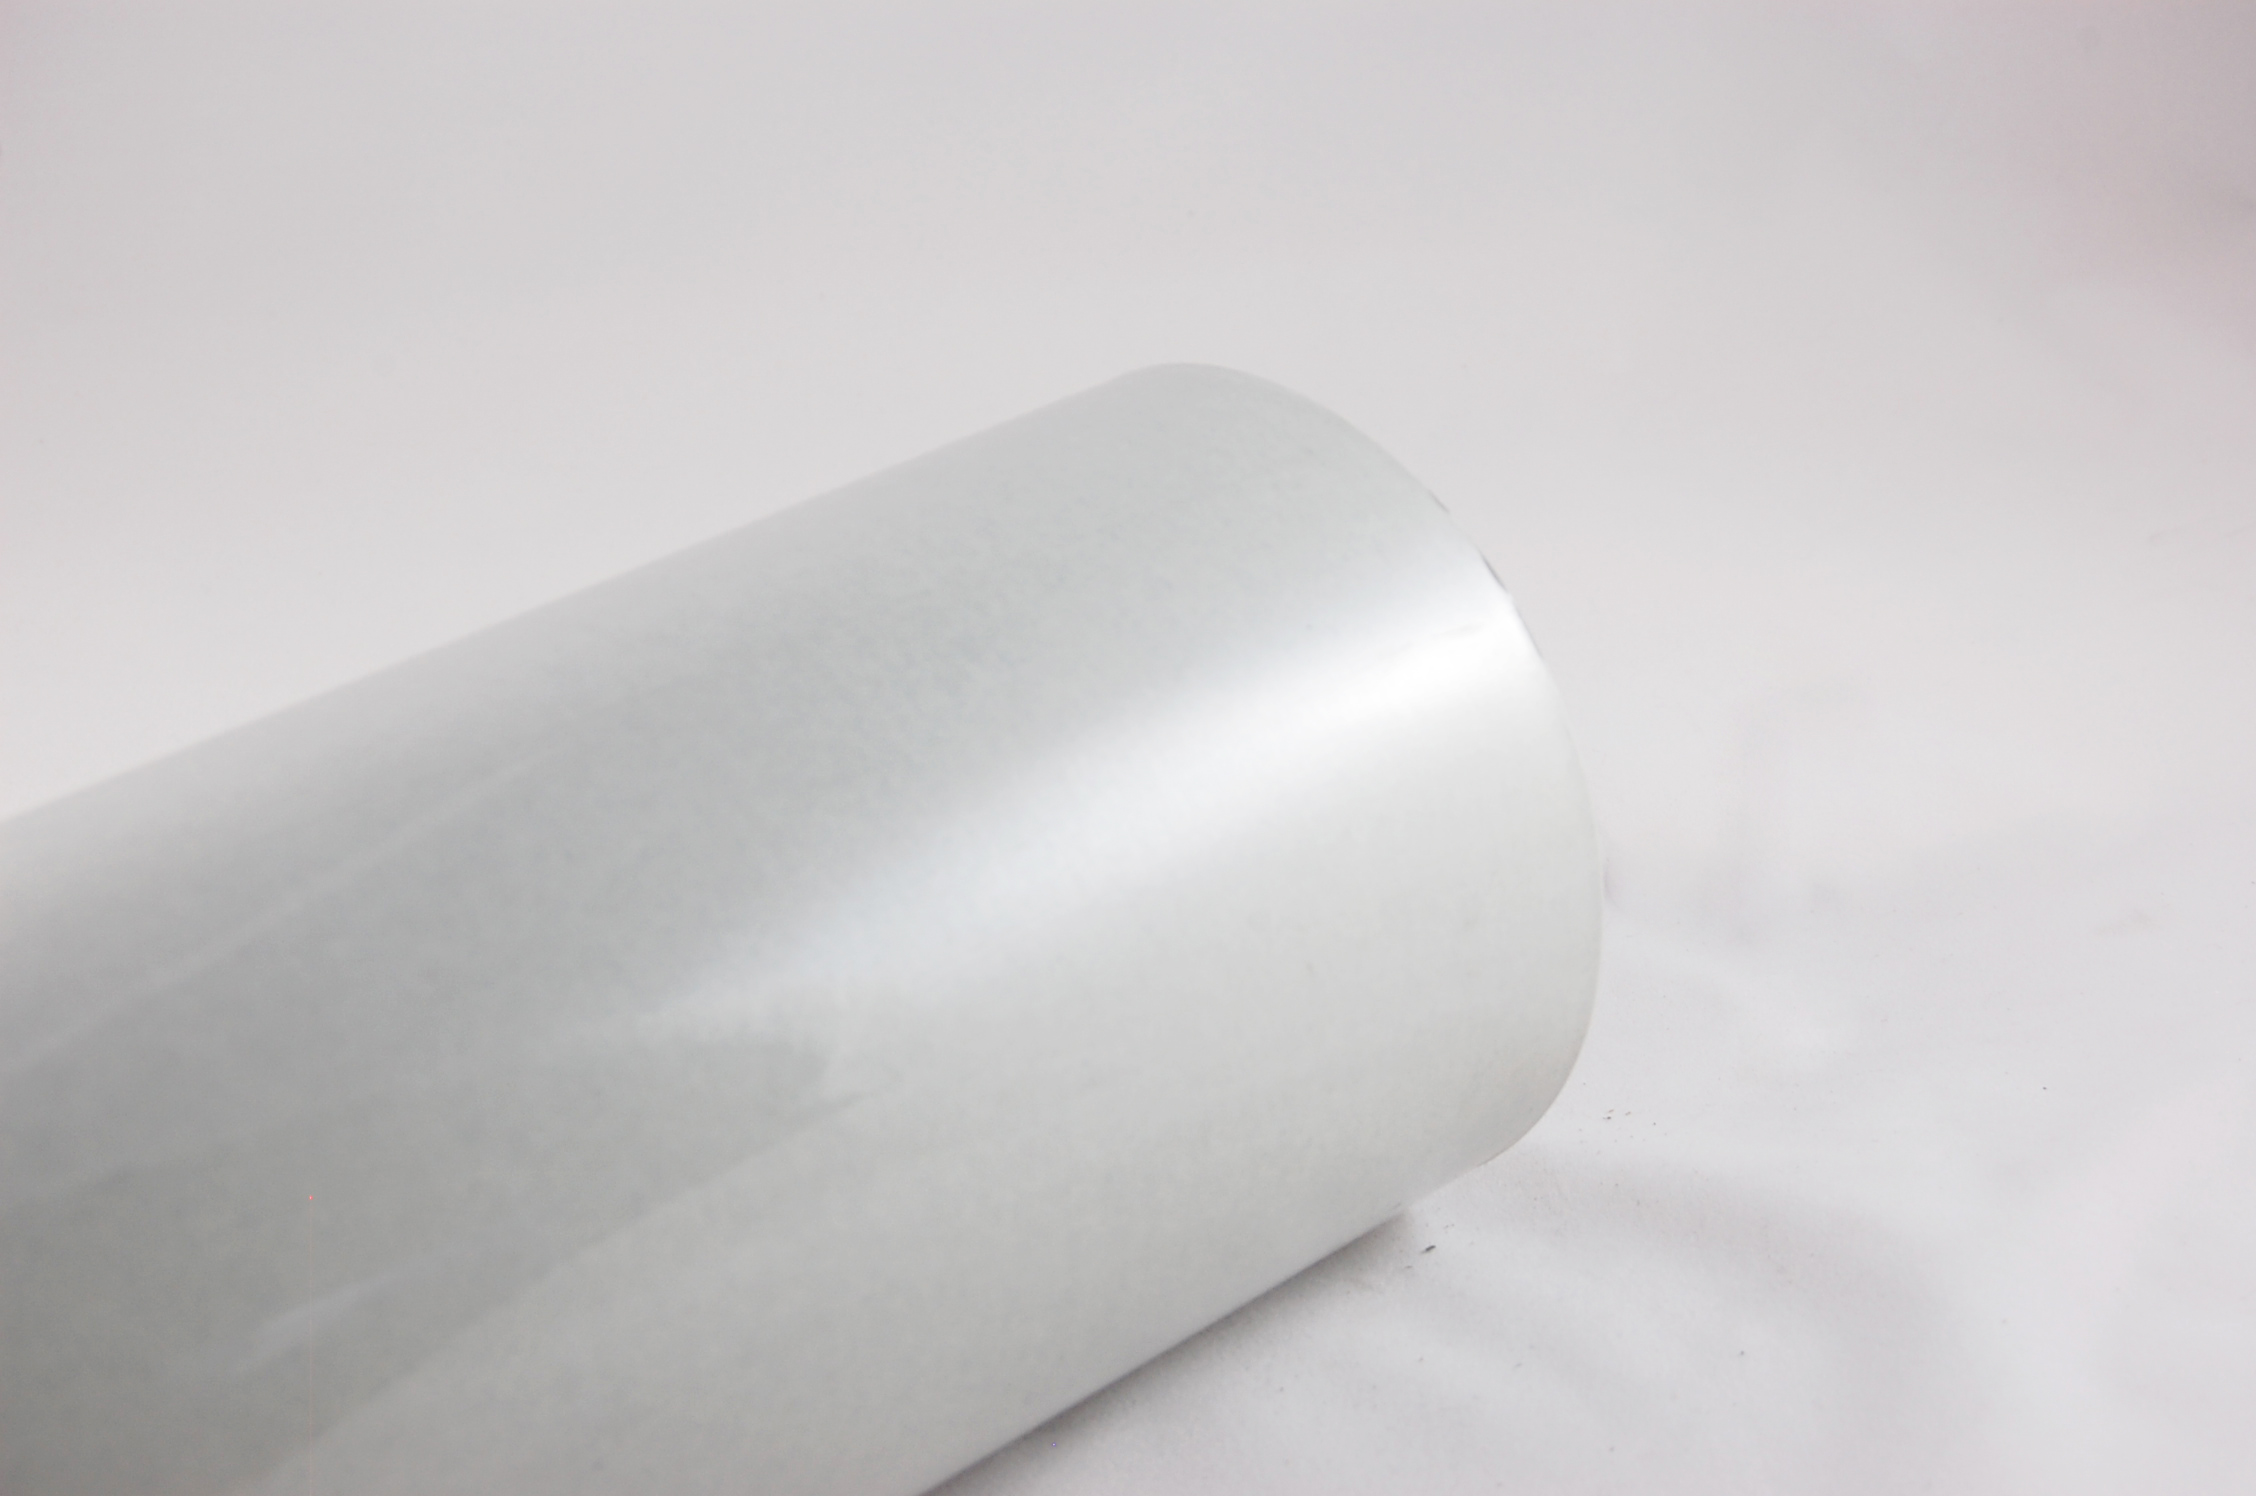 Acuflex® RMR 10-2-10 .022" thick 3-Ply RAG/MYLAR/RAG Flexible Laminate 130°C, gray, 36" wide x  250 SY roll